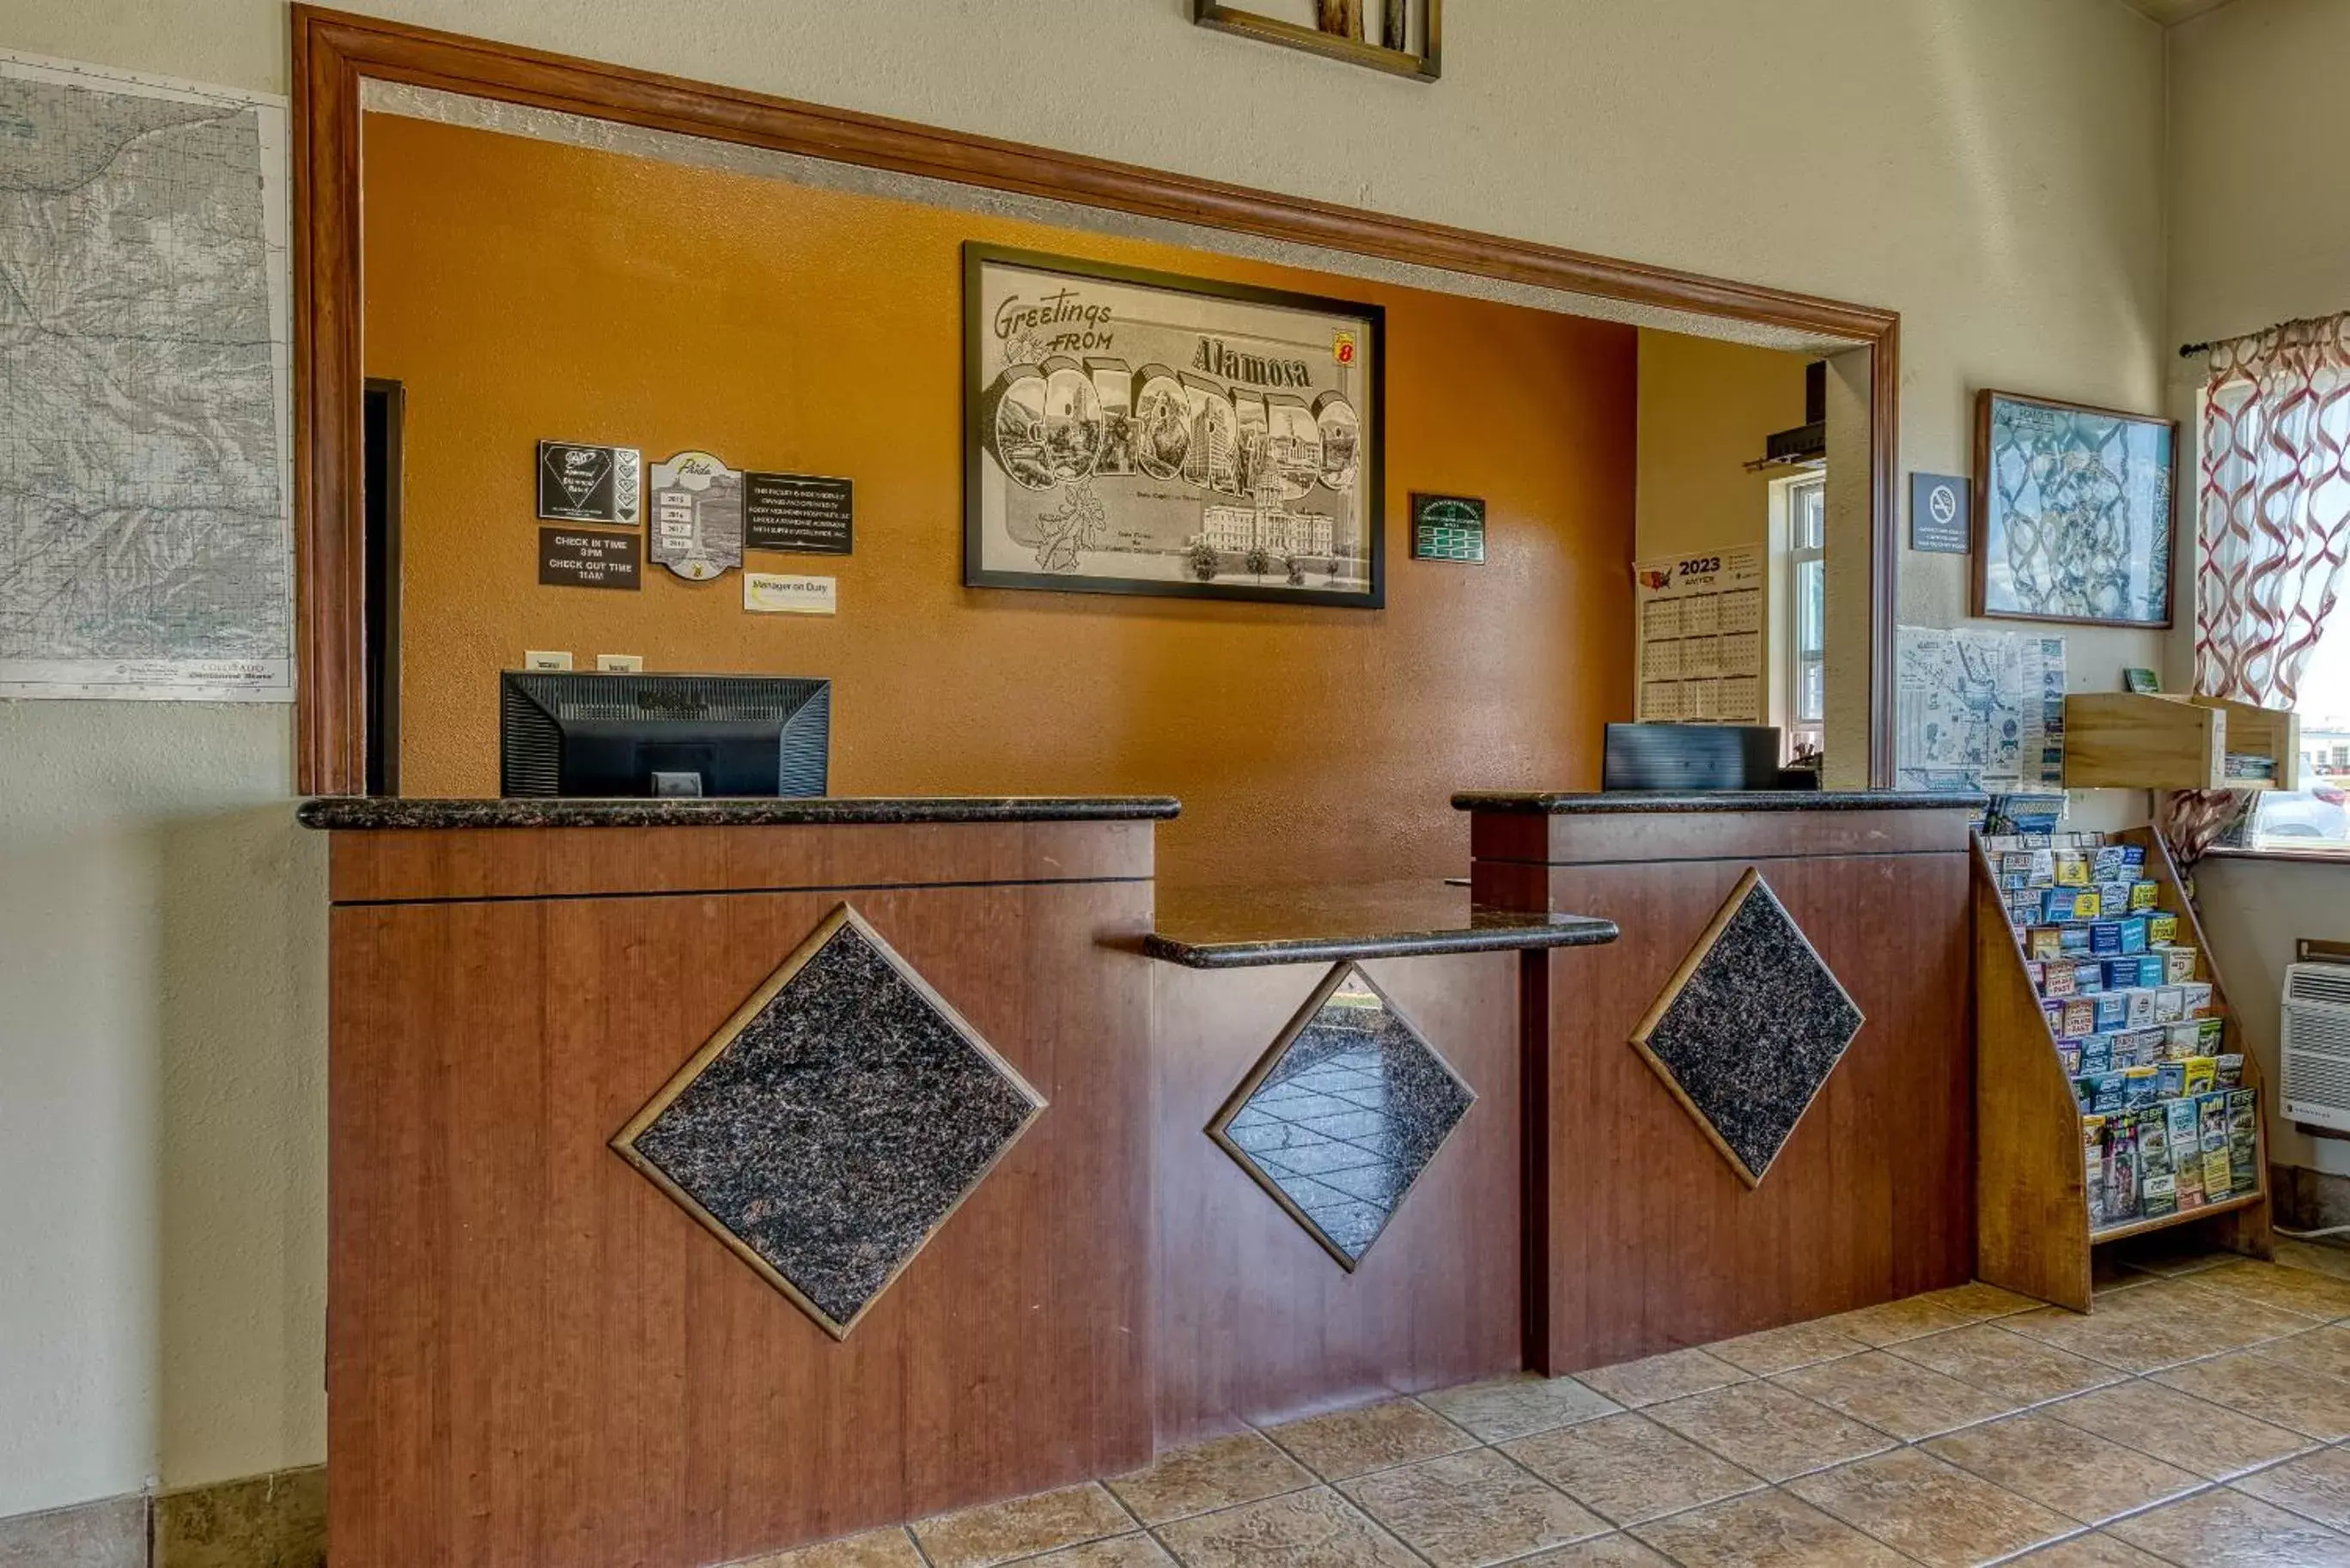 Lobby or reception, Lobby/Reception in Super 8 by Wyndham Alamosa